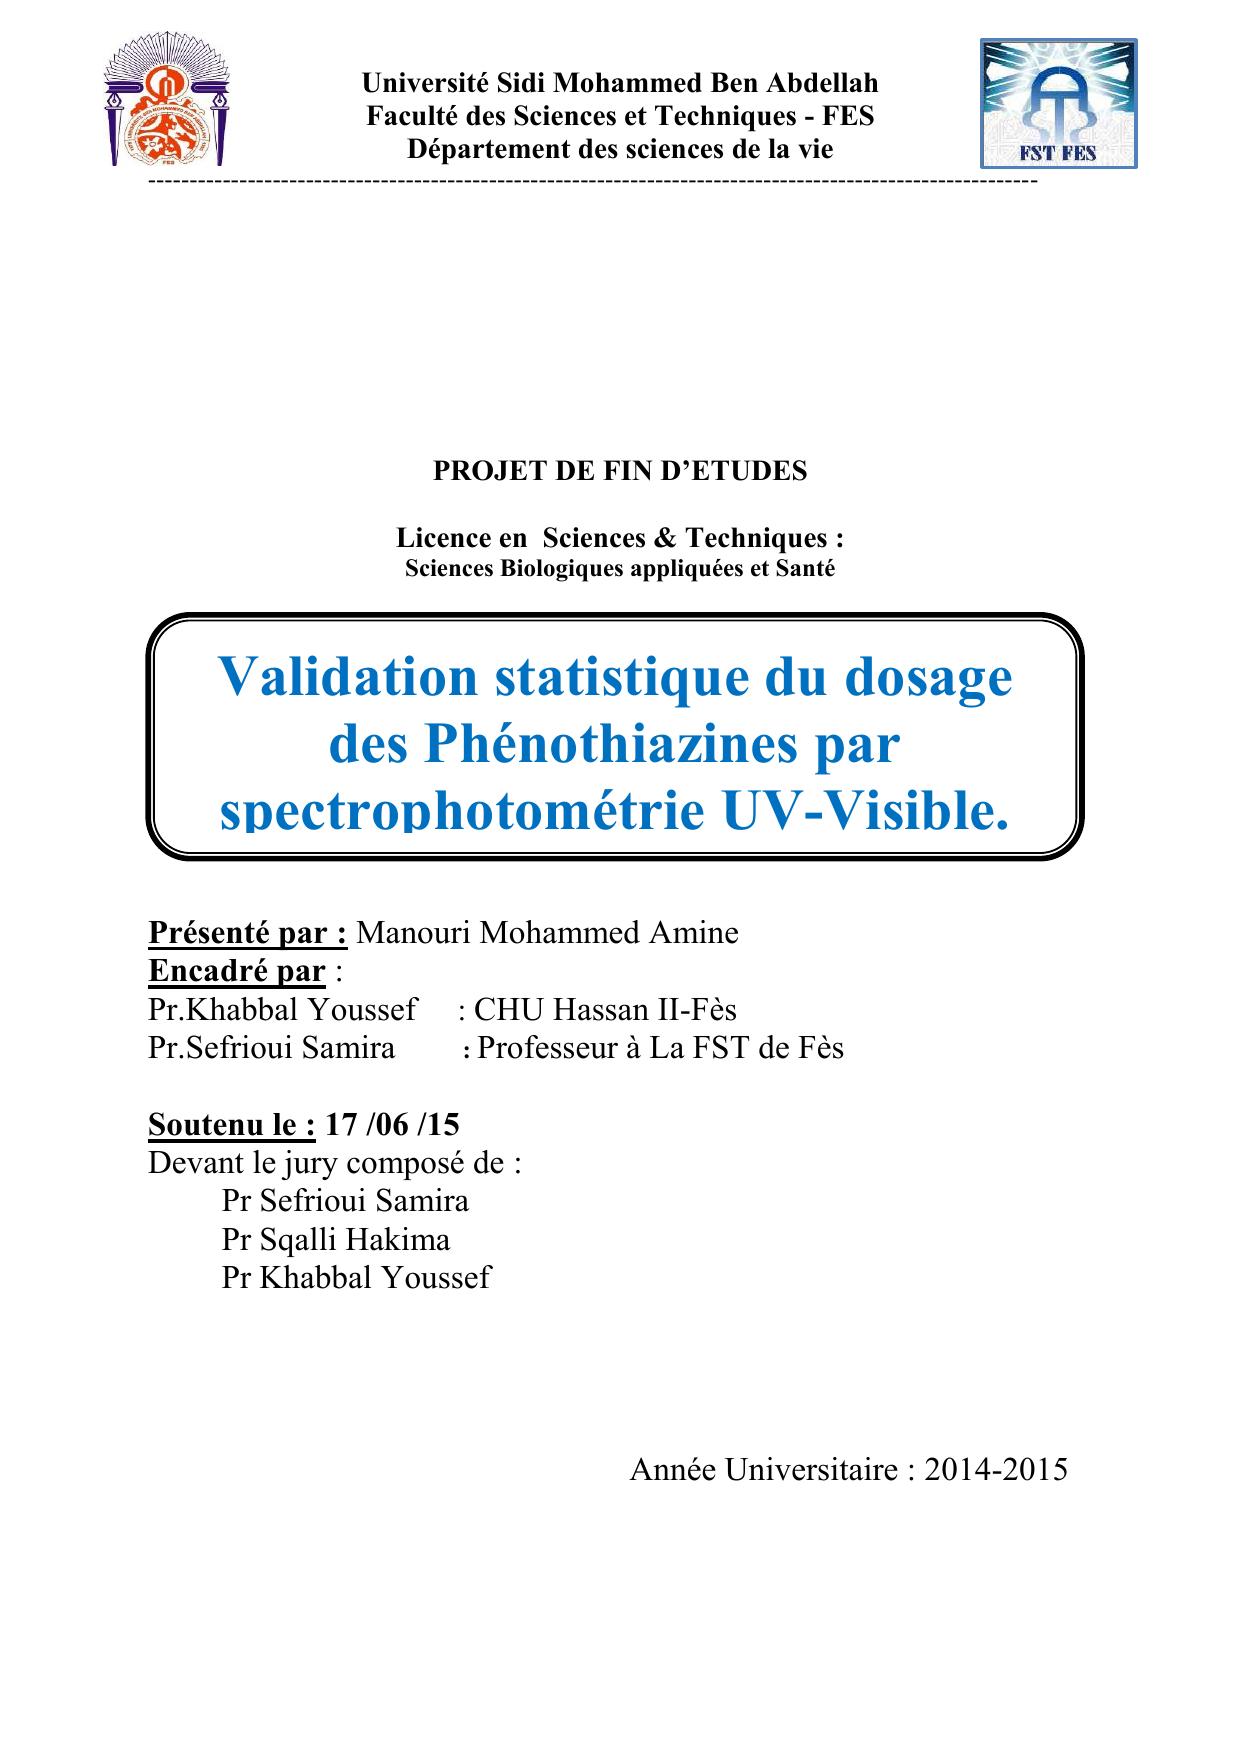 Validation statistique du dosage des Phénothiazines par spectrophotométrie UV-Visible